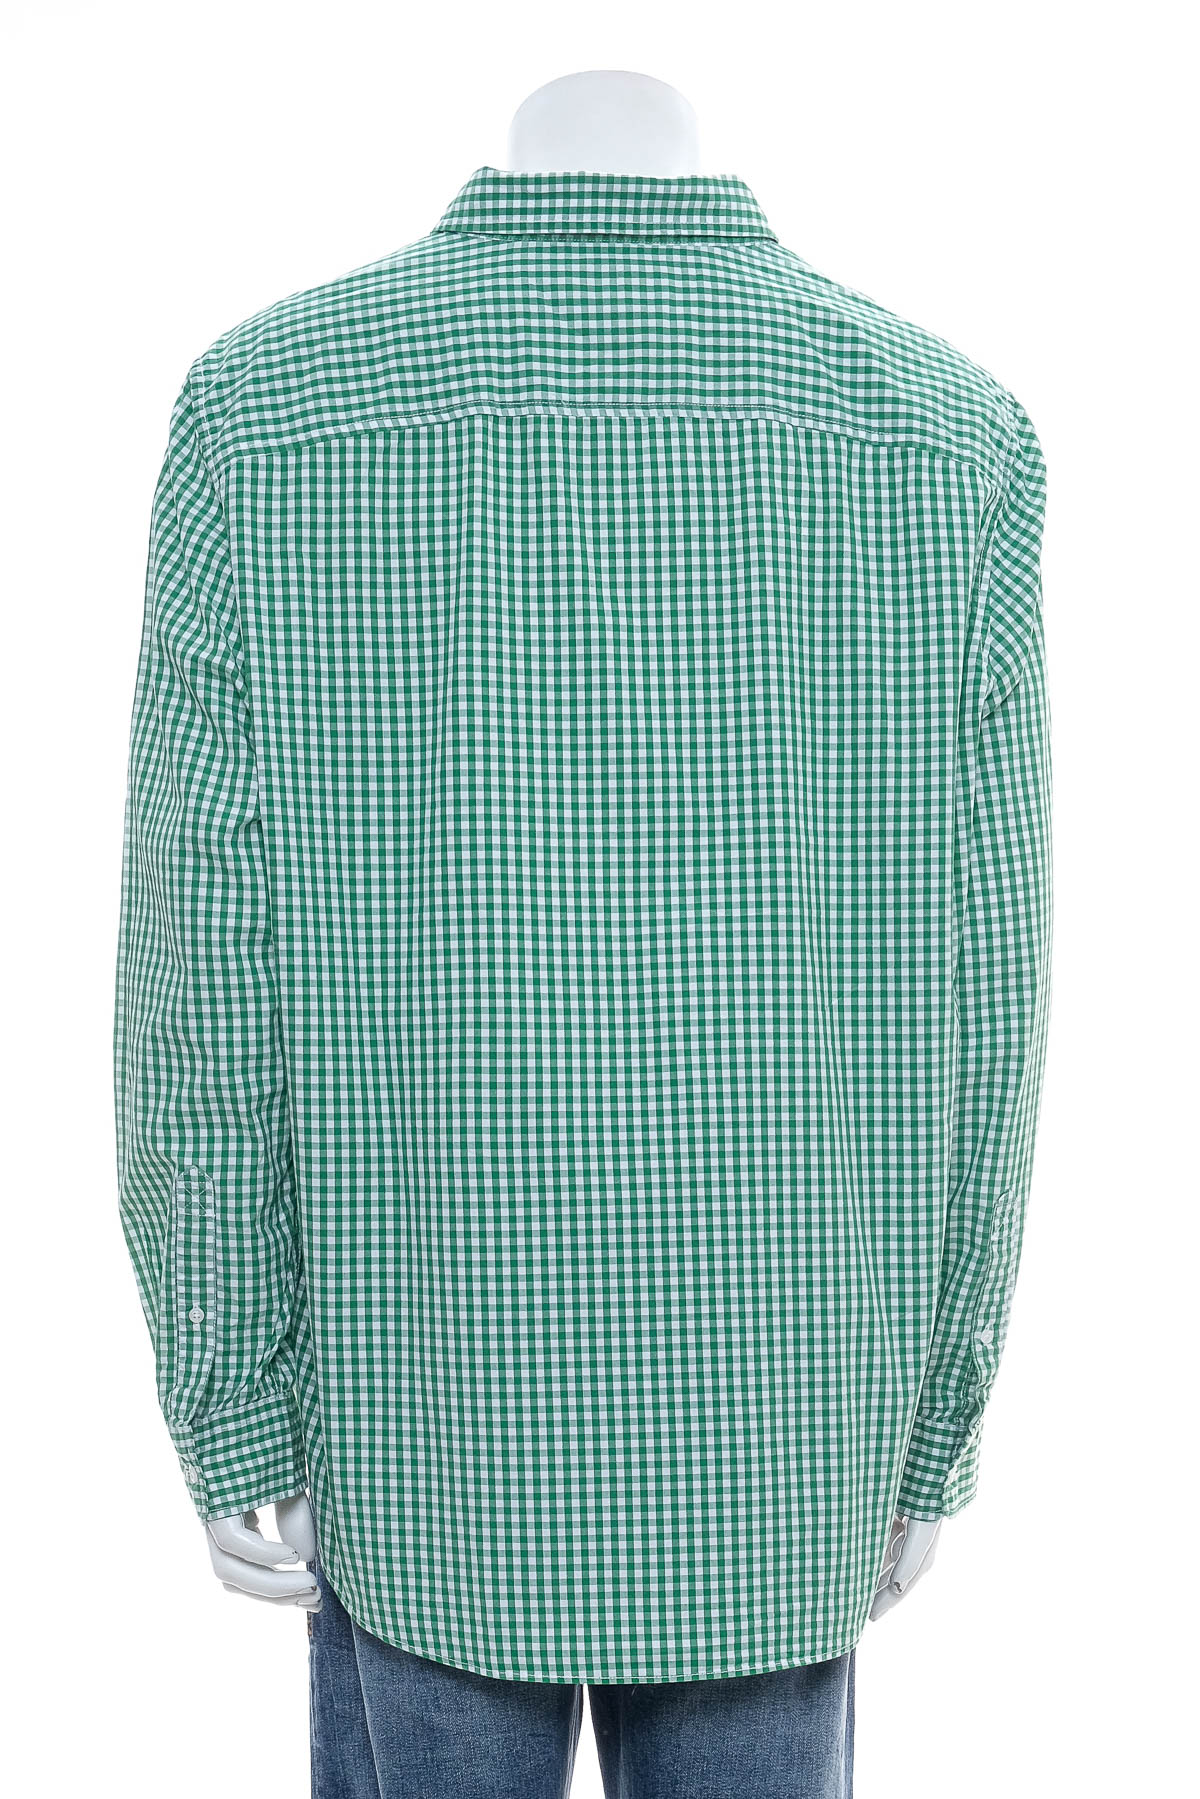 Ανδρικό πουκάμισο - Timberland - 1